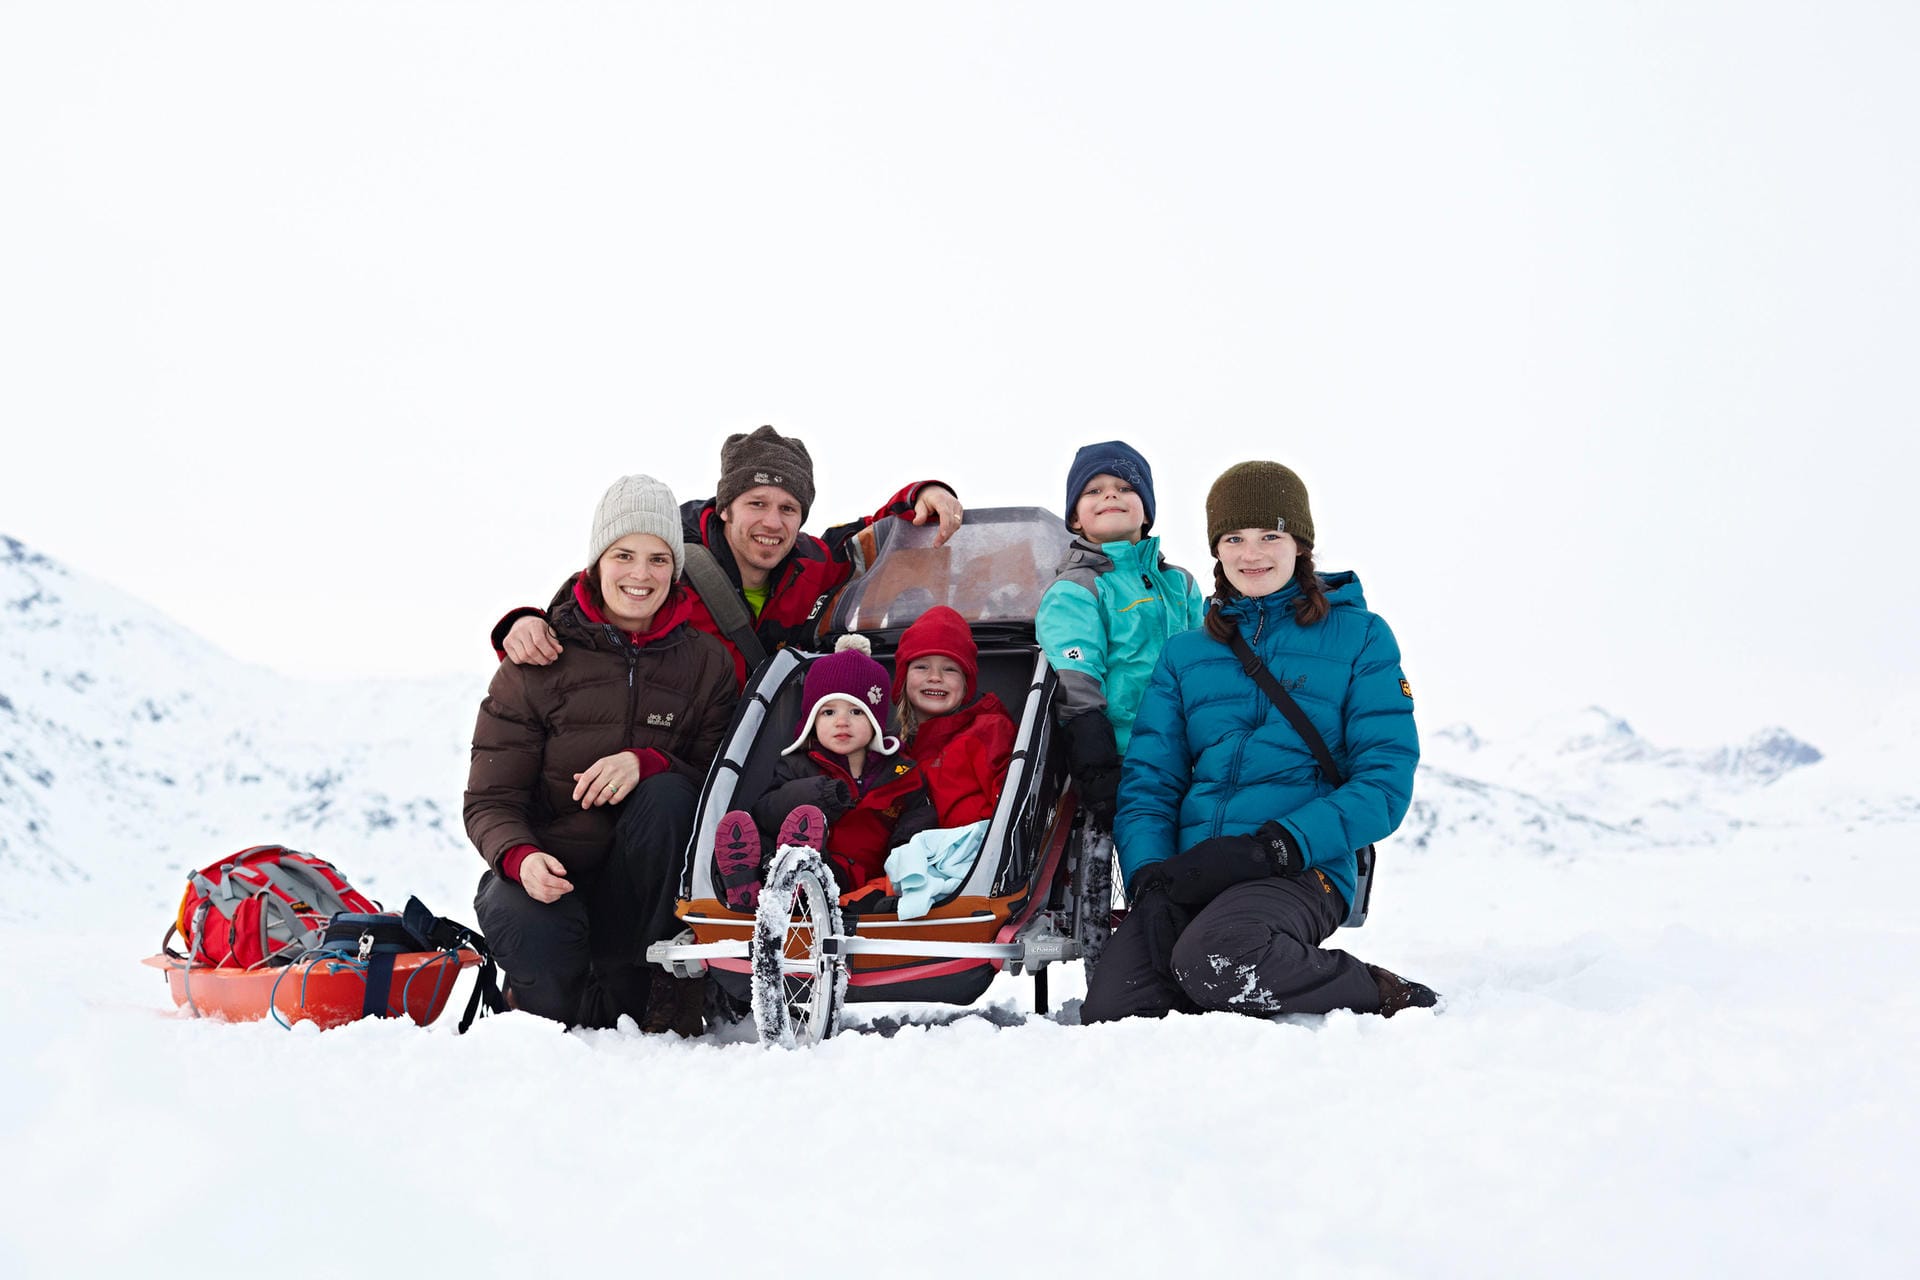 "Die Welt von Morgen" - Jana, Jens, Frieda, Hannah, Mio und Paula Steingässer in Grönland.